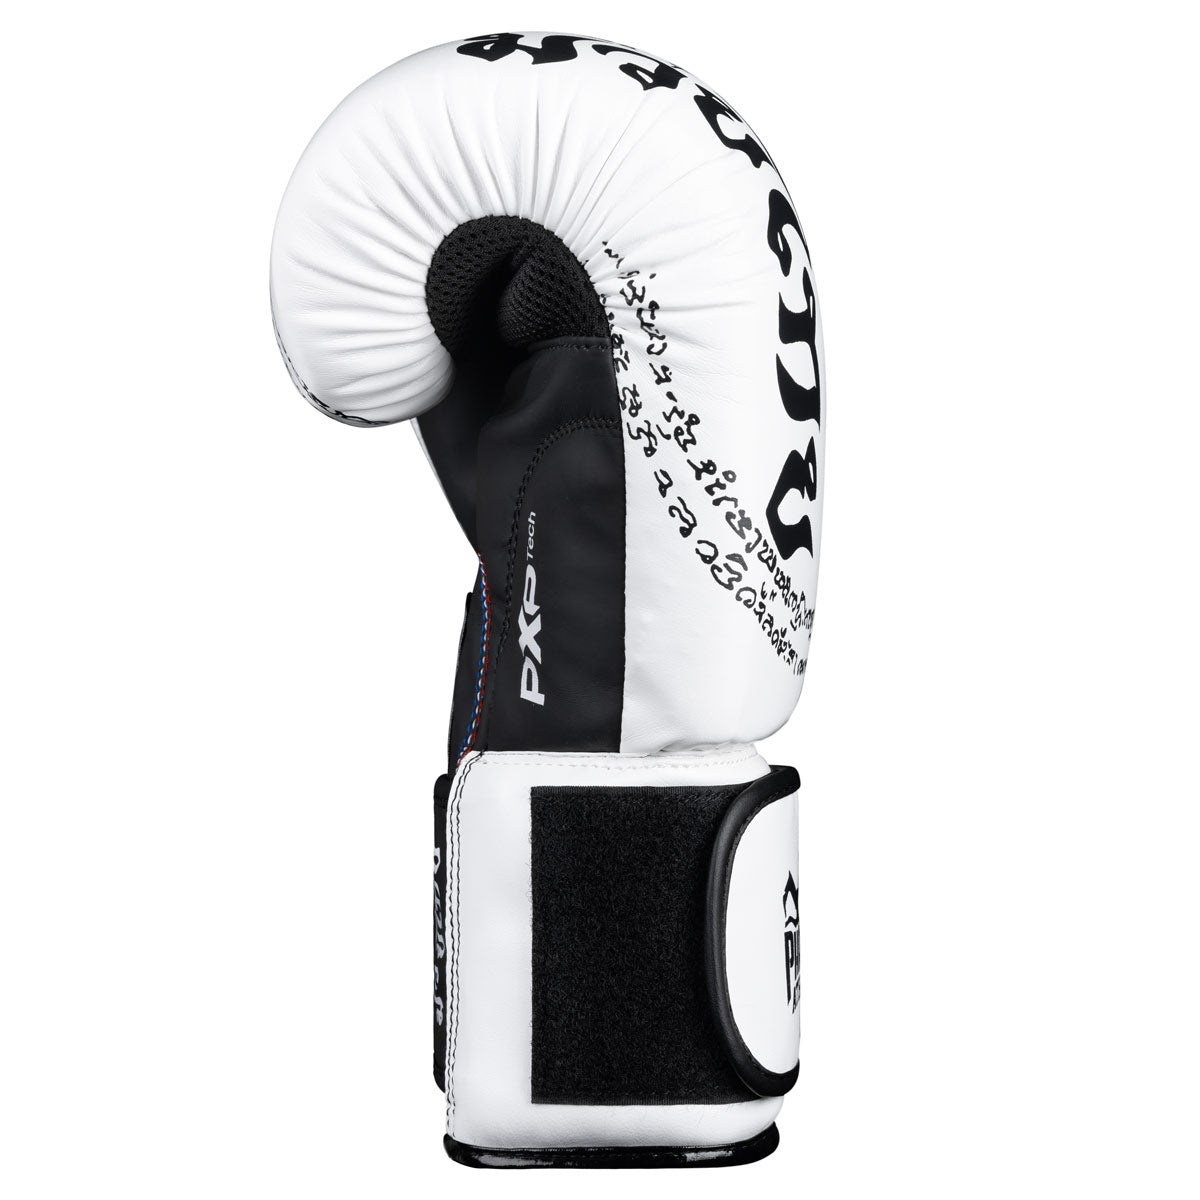 Die Phantom Muay Thai Boxhandschuhe verfügen über einen perfekten Schnitt und einen starken Klettverschluss für ultimativen Handgelenkssupport. 